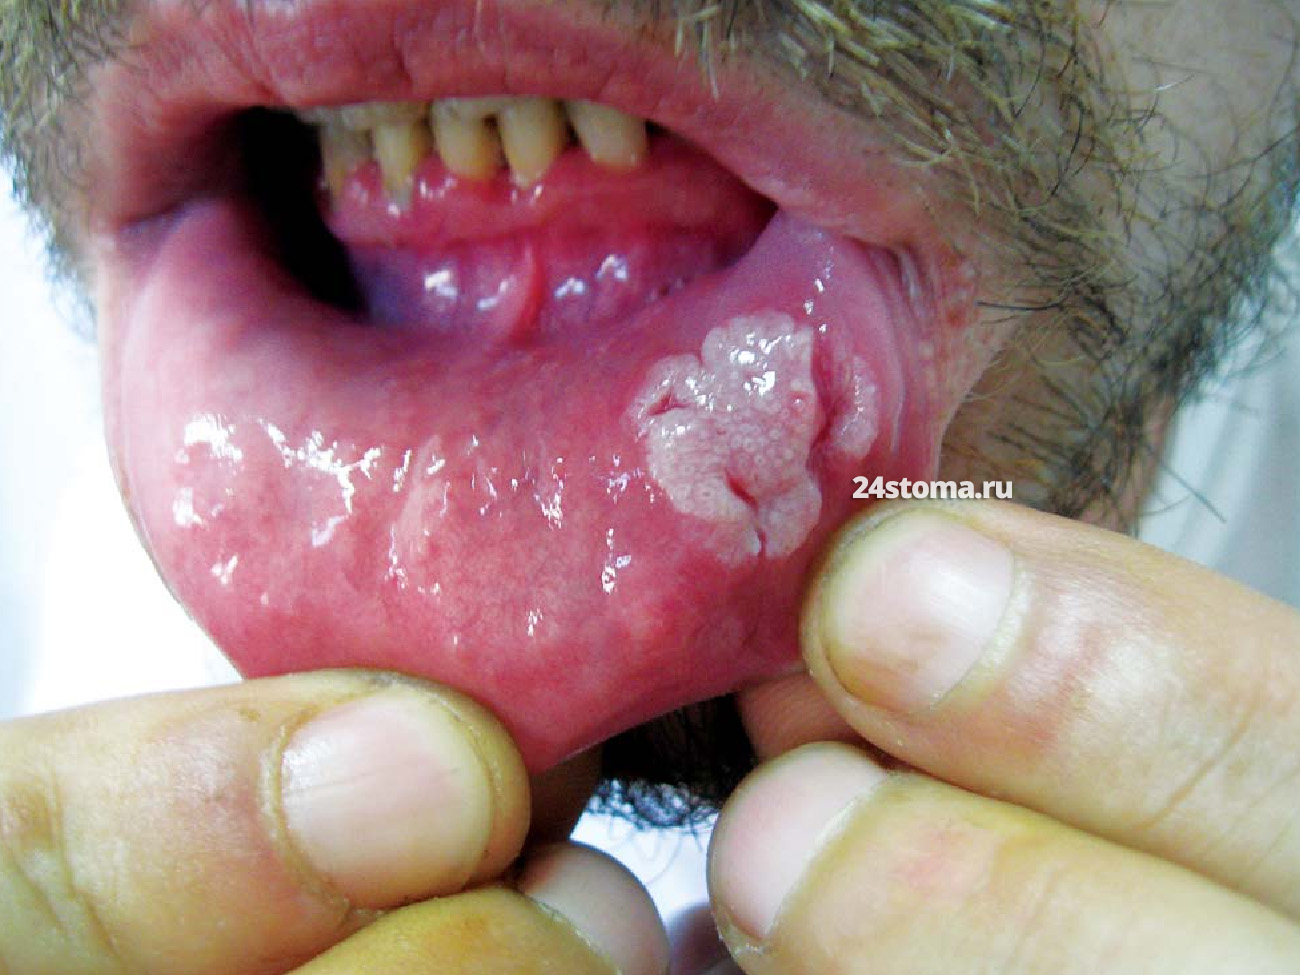 Широкая кондилома на слизистой оболочке губы (вторичный сифилис)